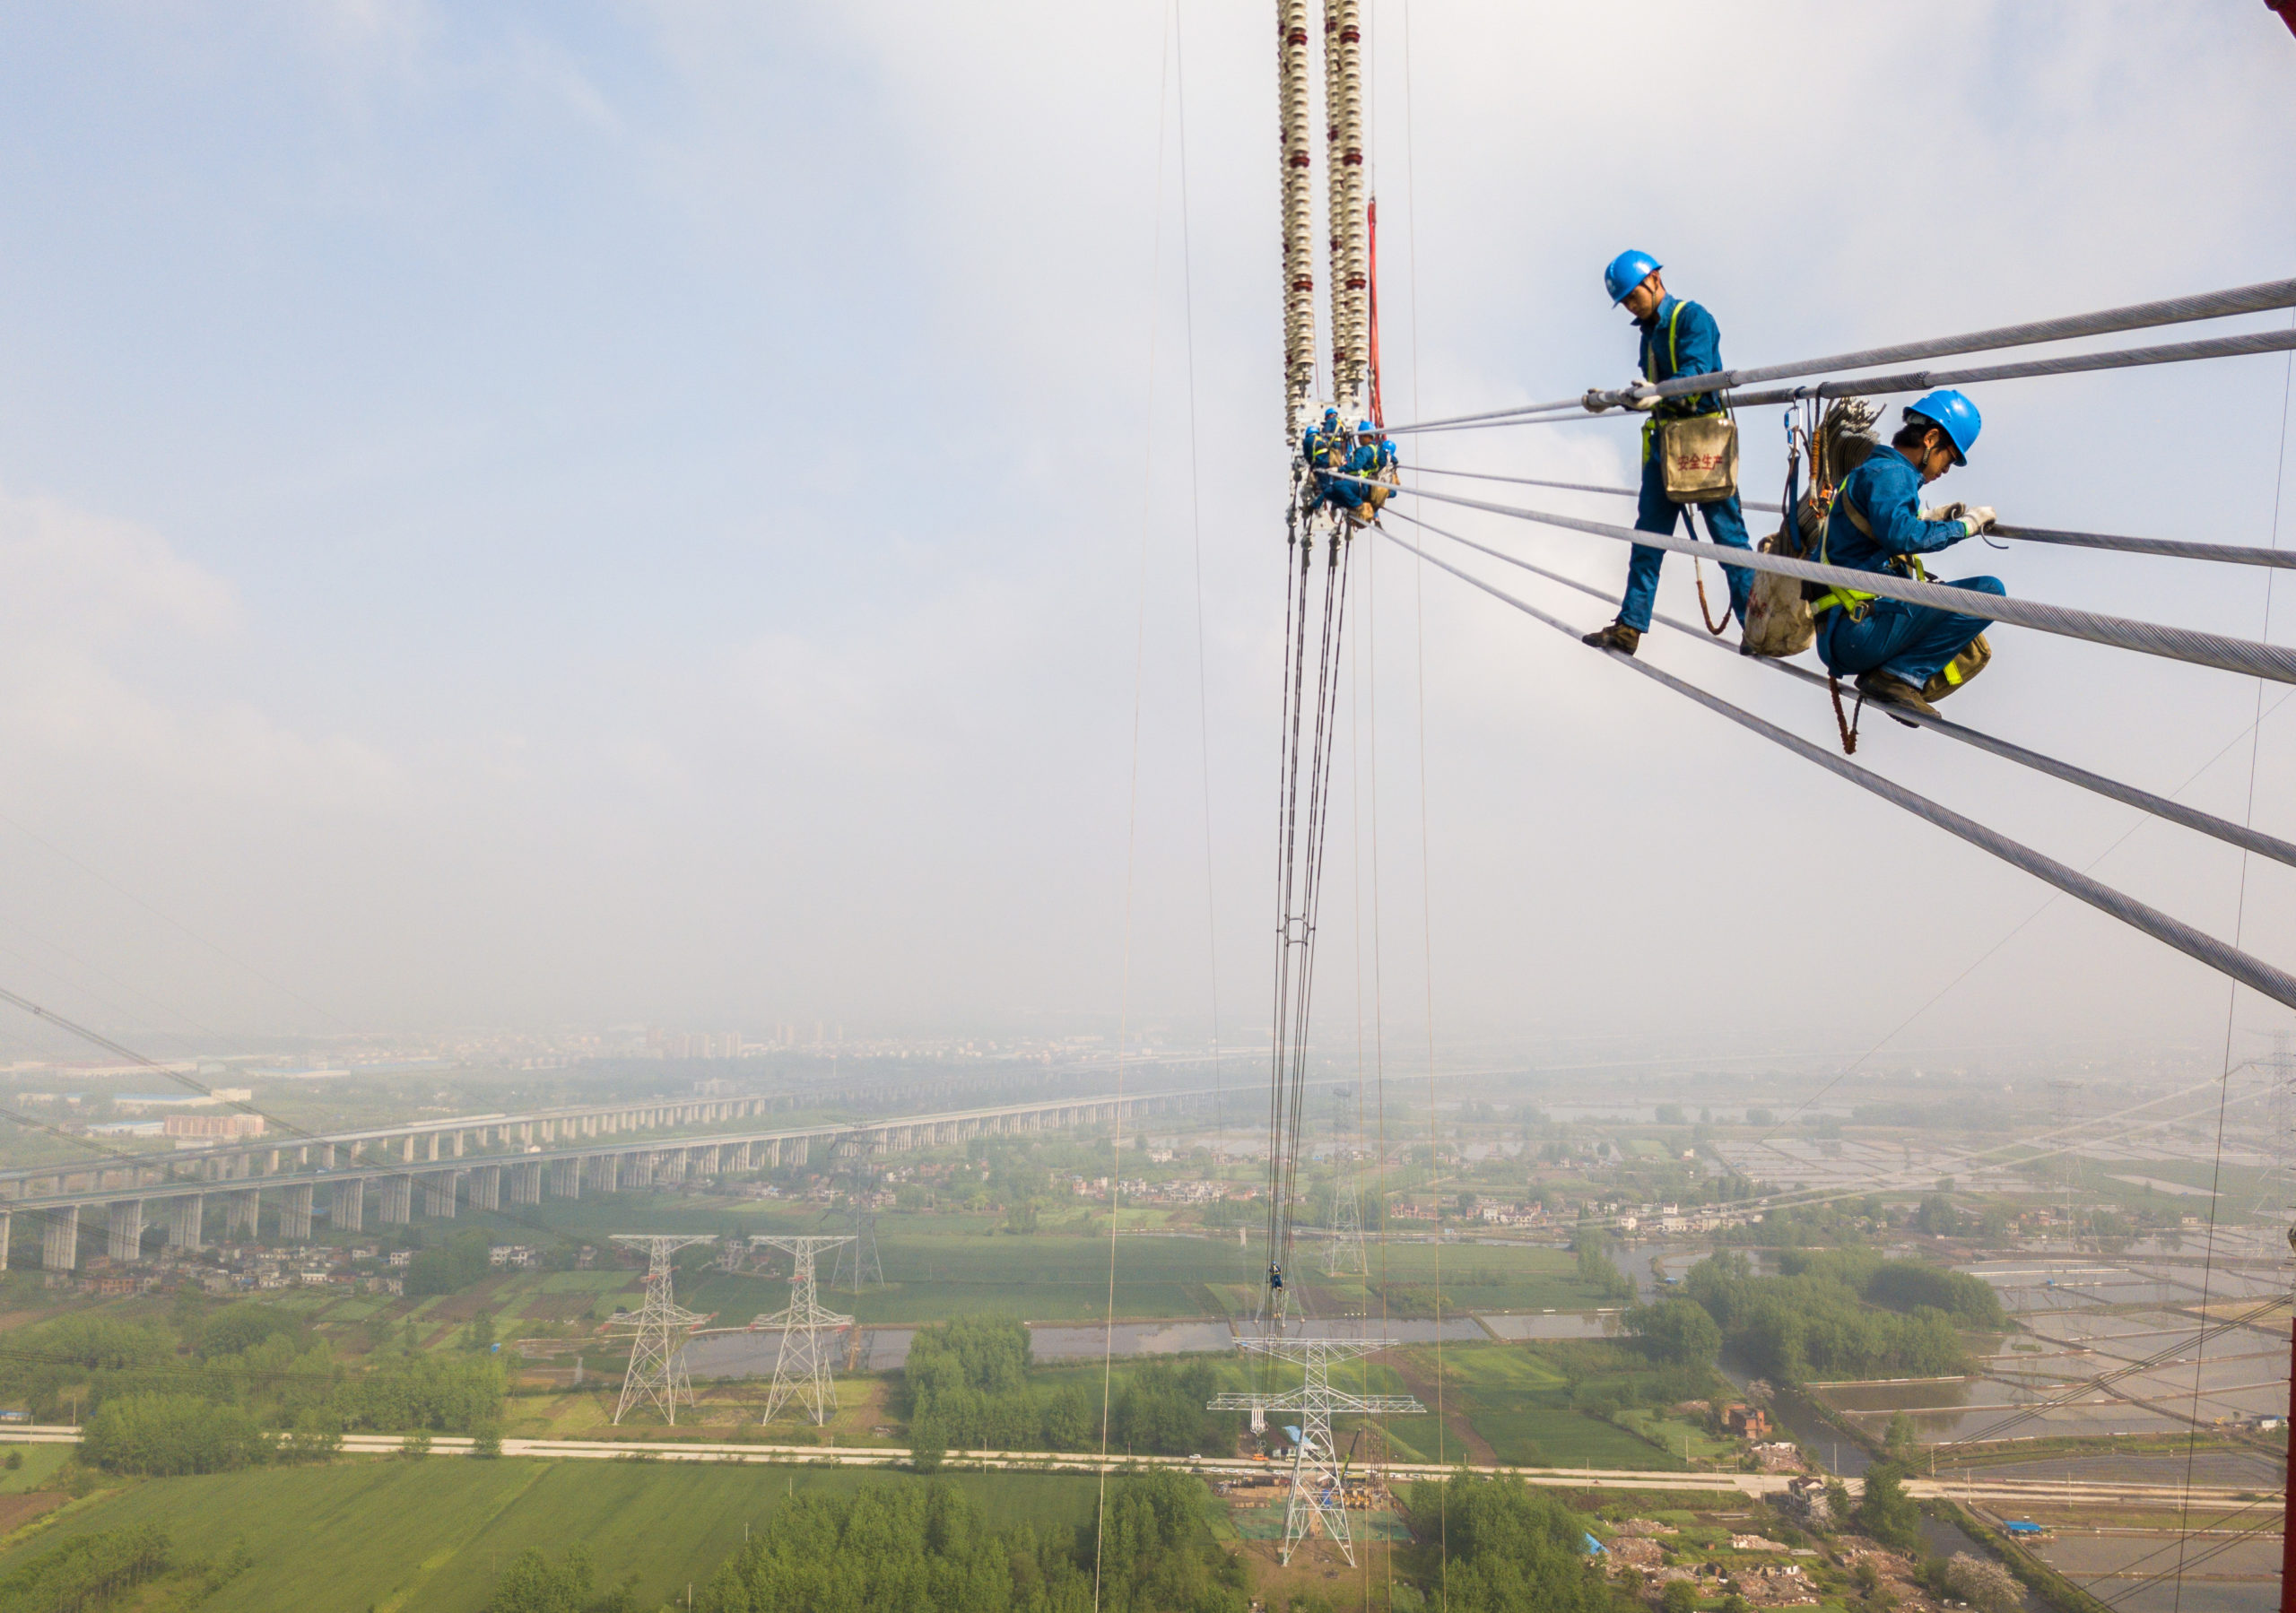 Yläilmoissa taiteilevat työntekijät viimeistelivät Changji-Guquan-korkeajännitelinjan osaa Anhuin maakunnassa keväällä 2018. Kuva: Shutterstock/All Over Press